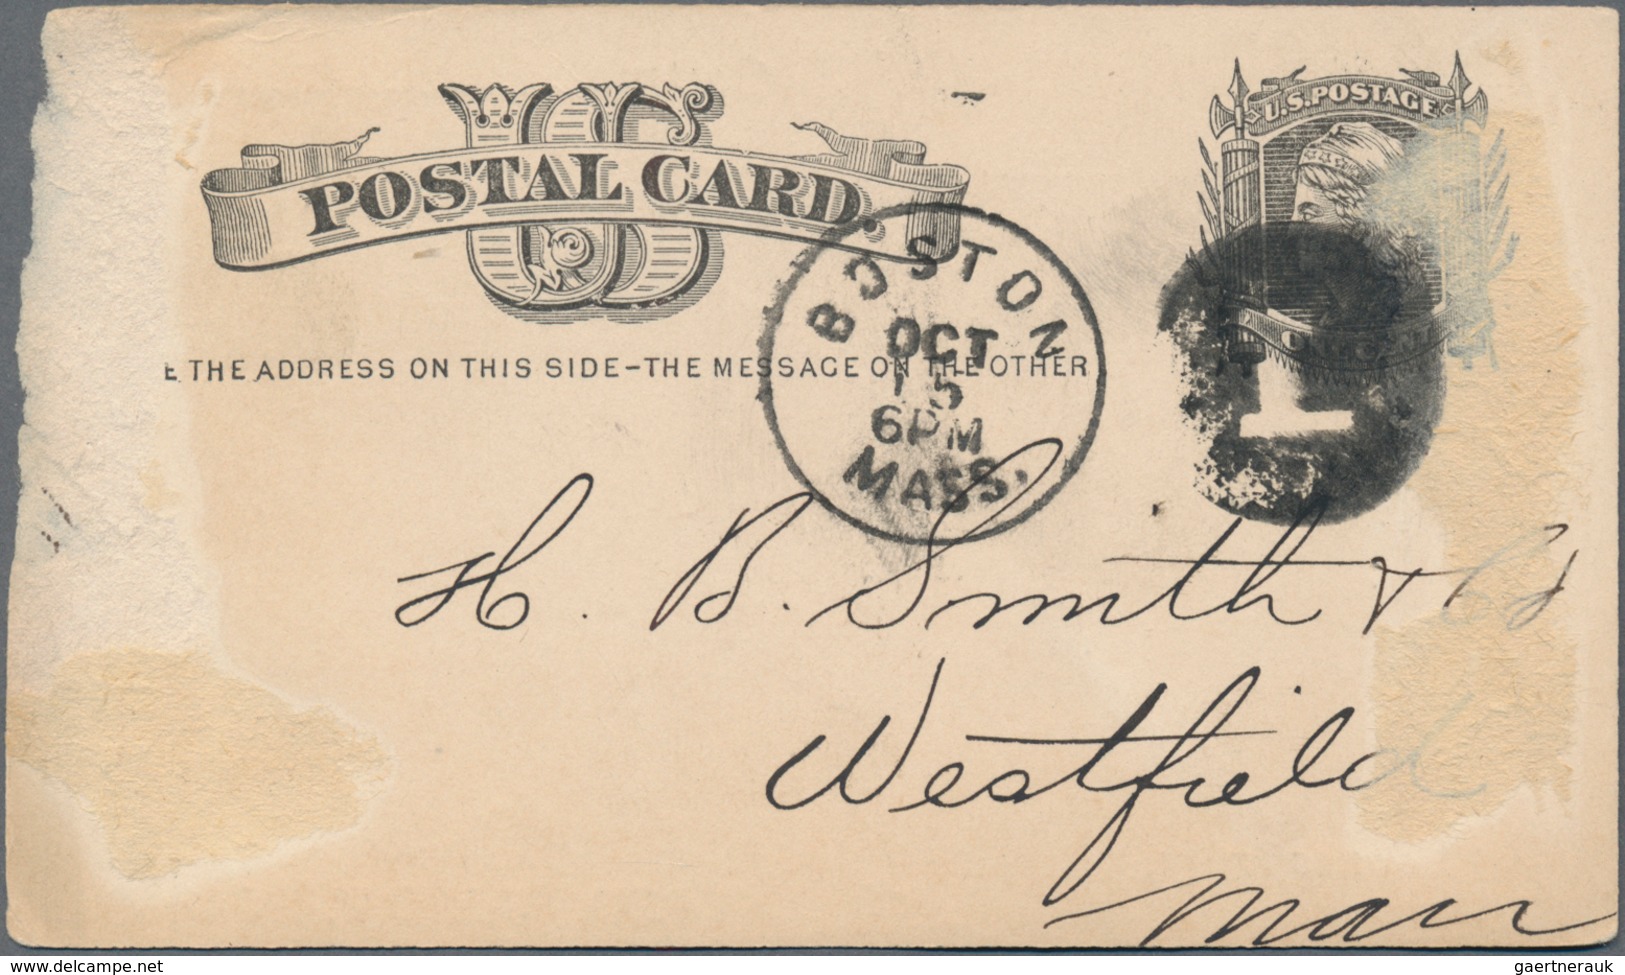 Vereinigte Staaten von Amerika - Ganzsachen: 1879/81, stationery card 1 C. black (11) with circular